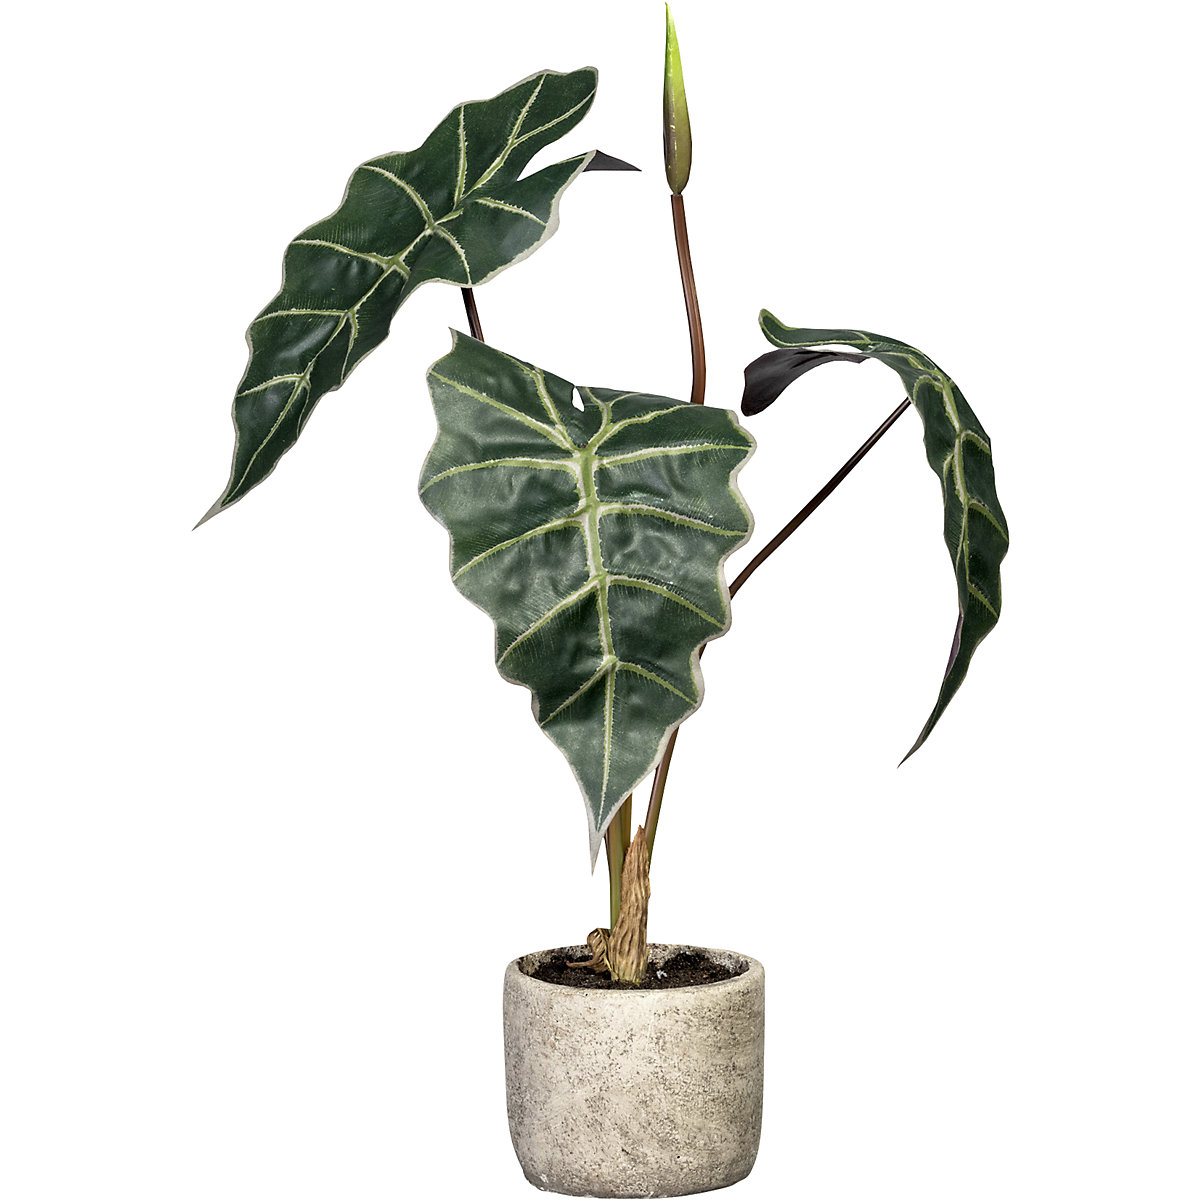 Artificial plant – true to nature replica